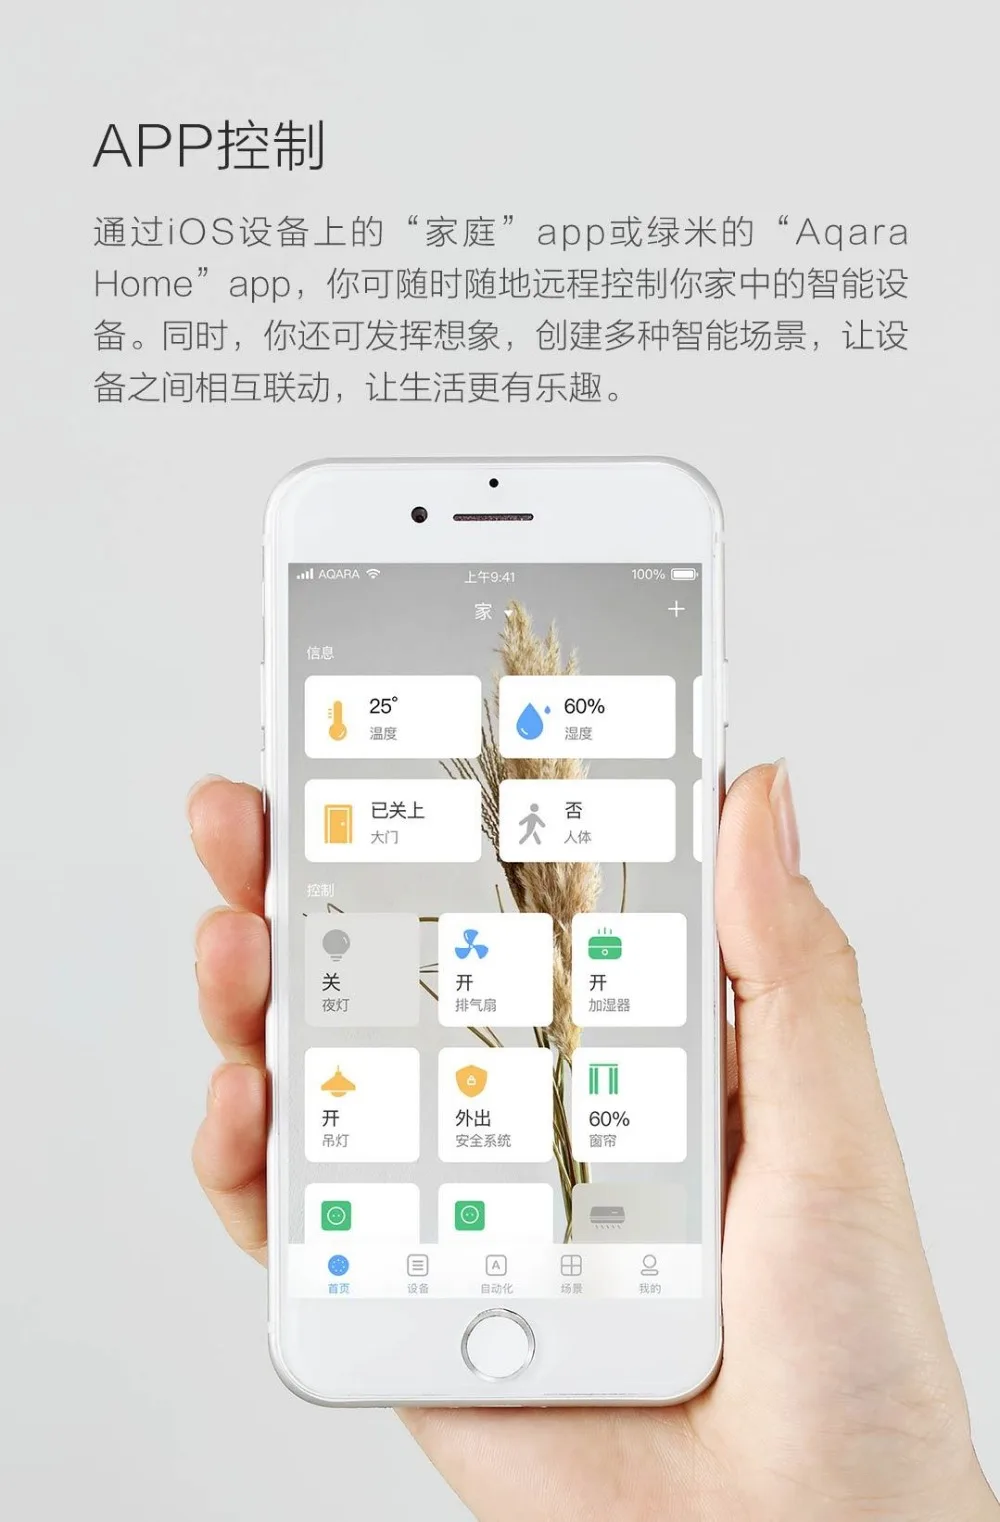 xiaomi mi jia настенный выключатель, mi шлюз со светодиодной подсветкой Smart work с для Apple Homekit, международное издание